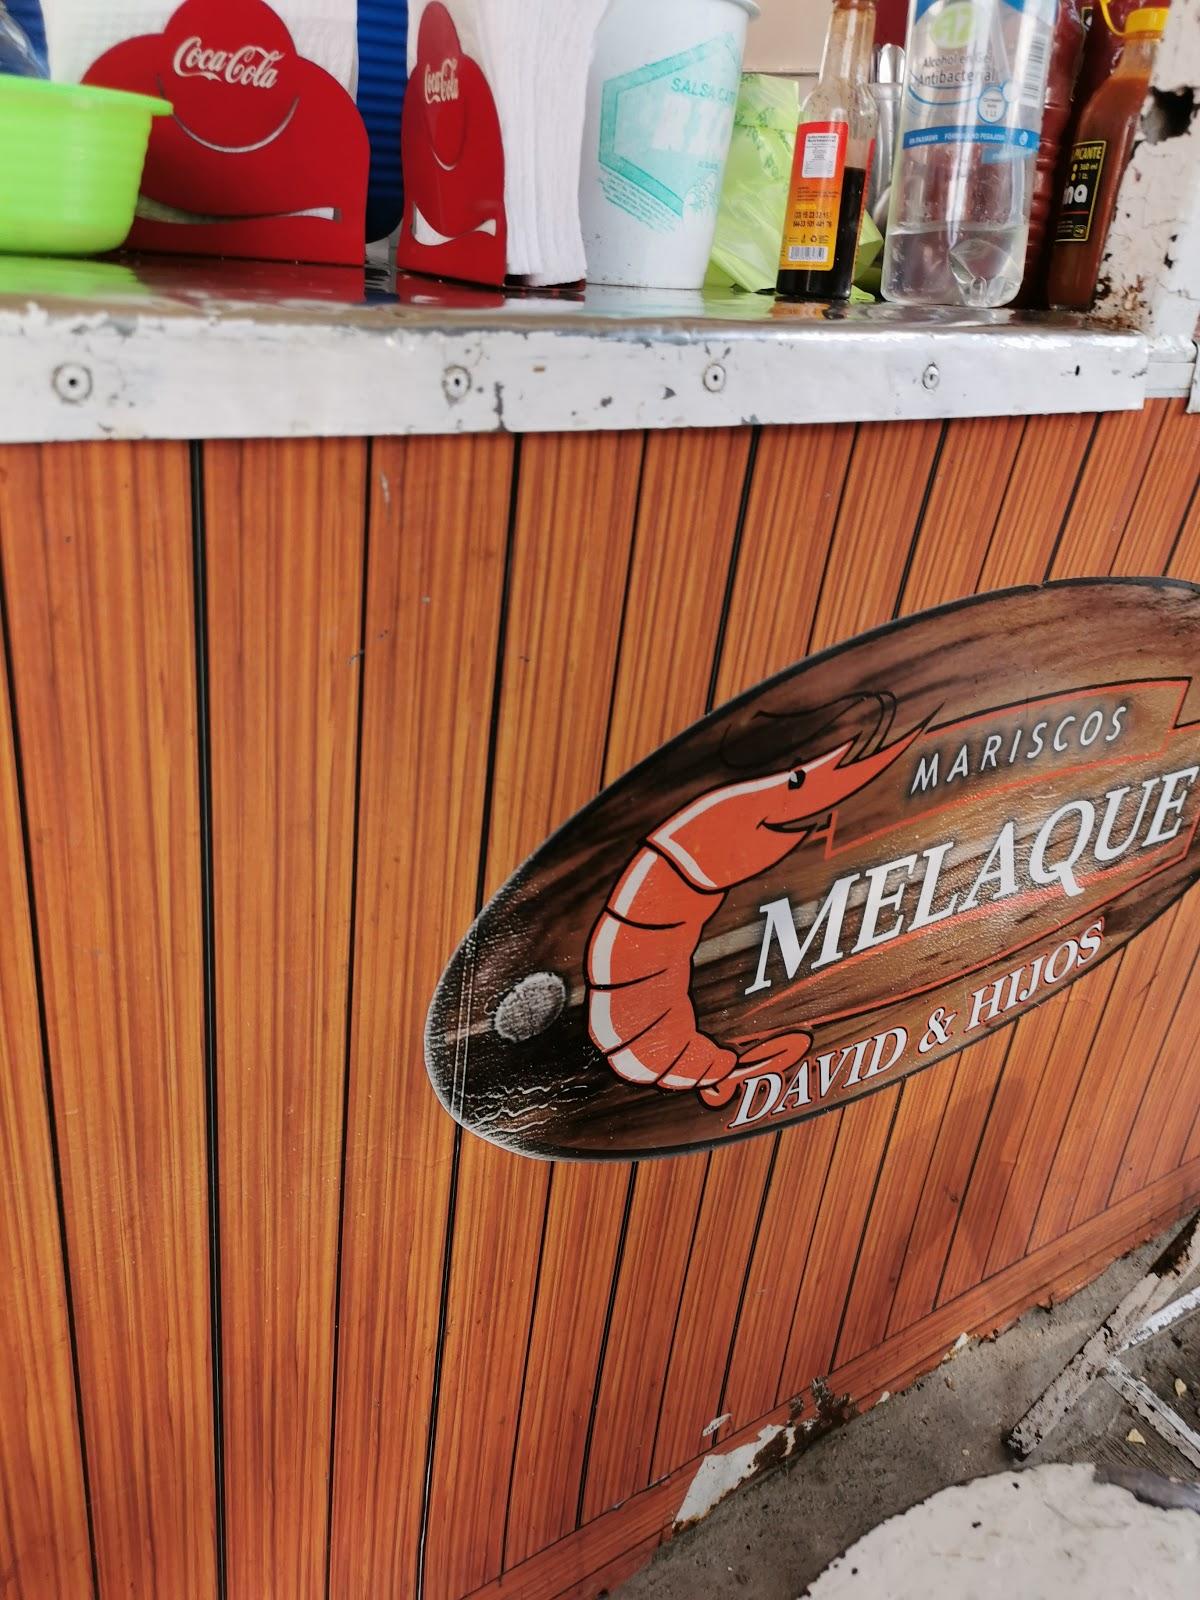 Restaurante Mariscos Melaque Mejia, Guadalajara - Opiniones del restaurante